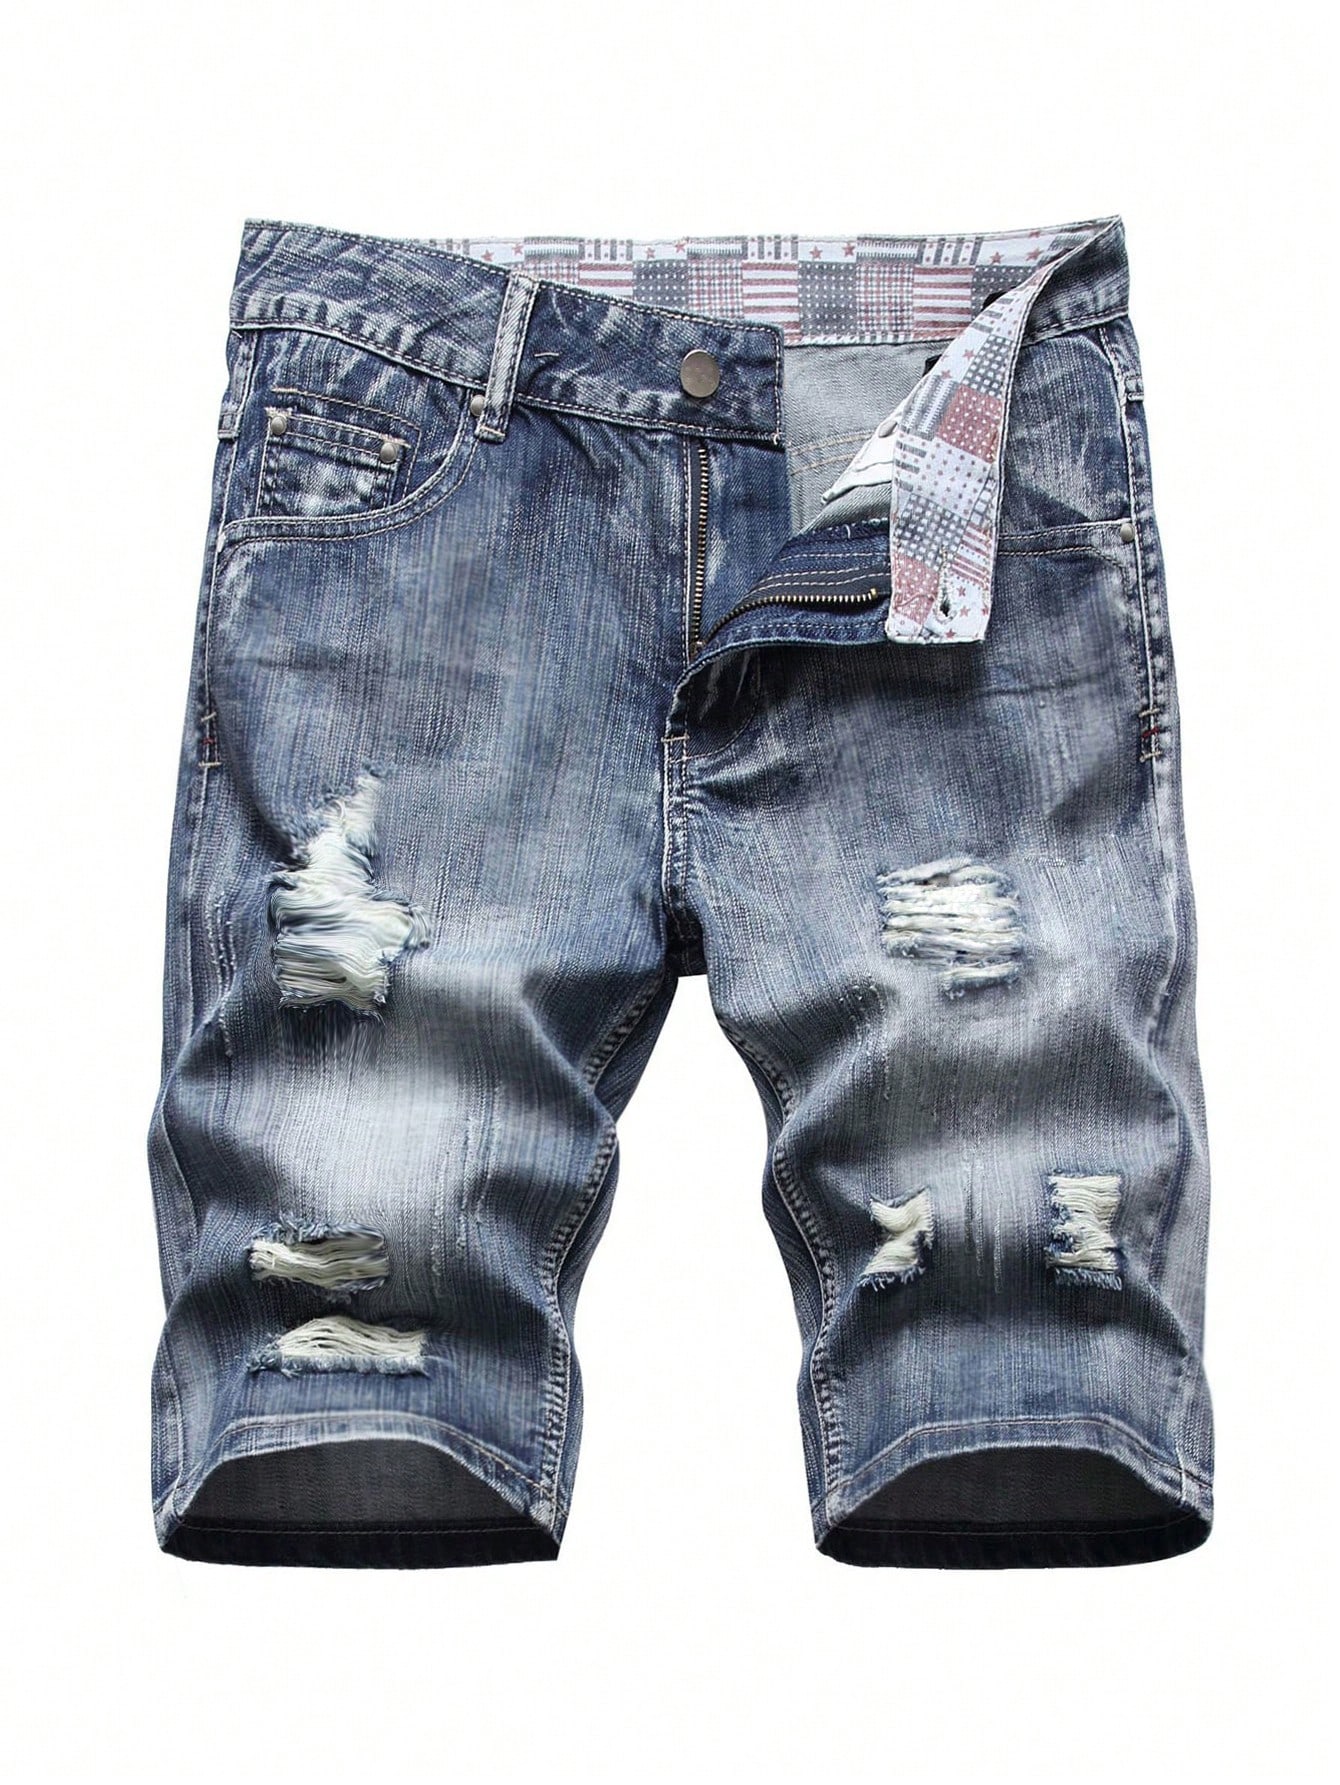 Мужские джинсовые шорты с потертостями, потертые, средняя стирка джинсовые шорты thoshort с эффектом потертостей diesel синий